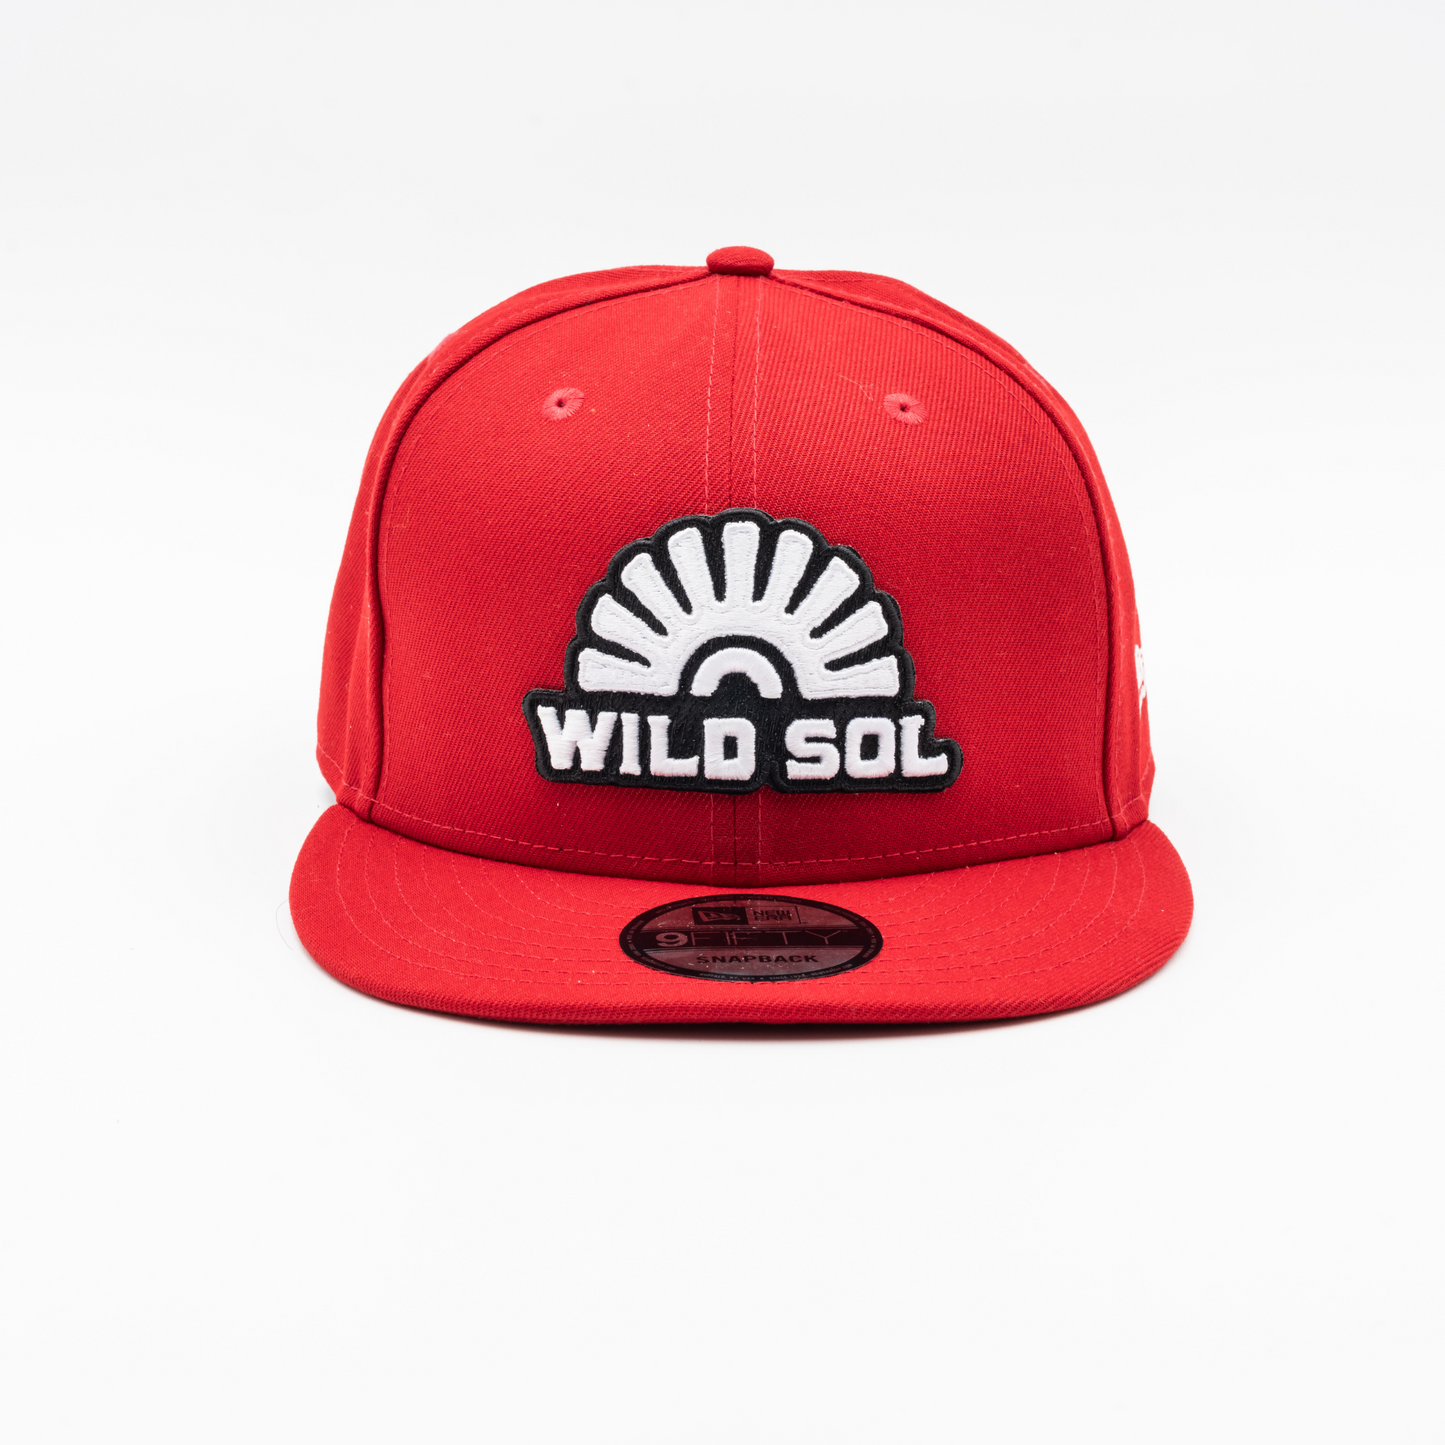 Wild Sol Red New Era Hat